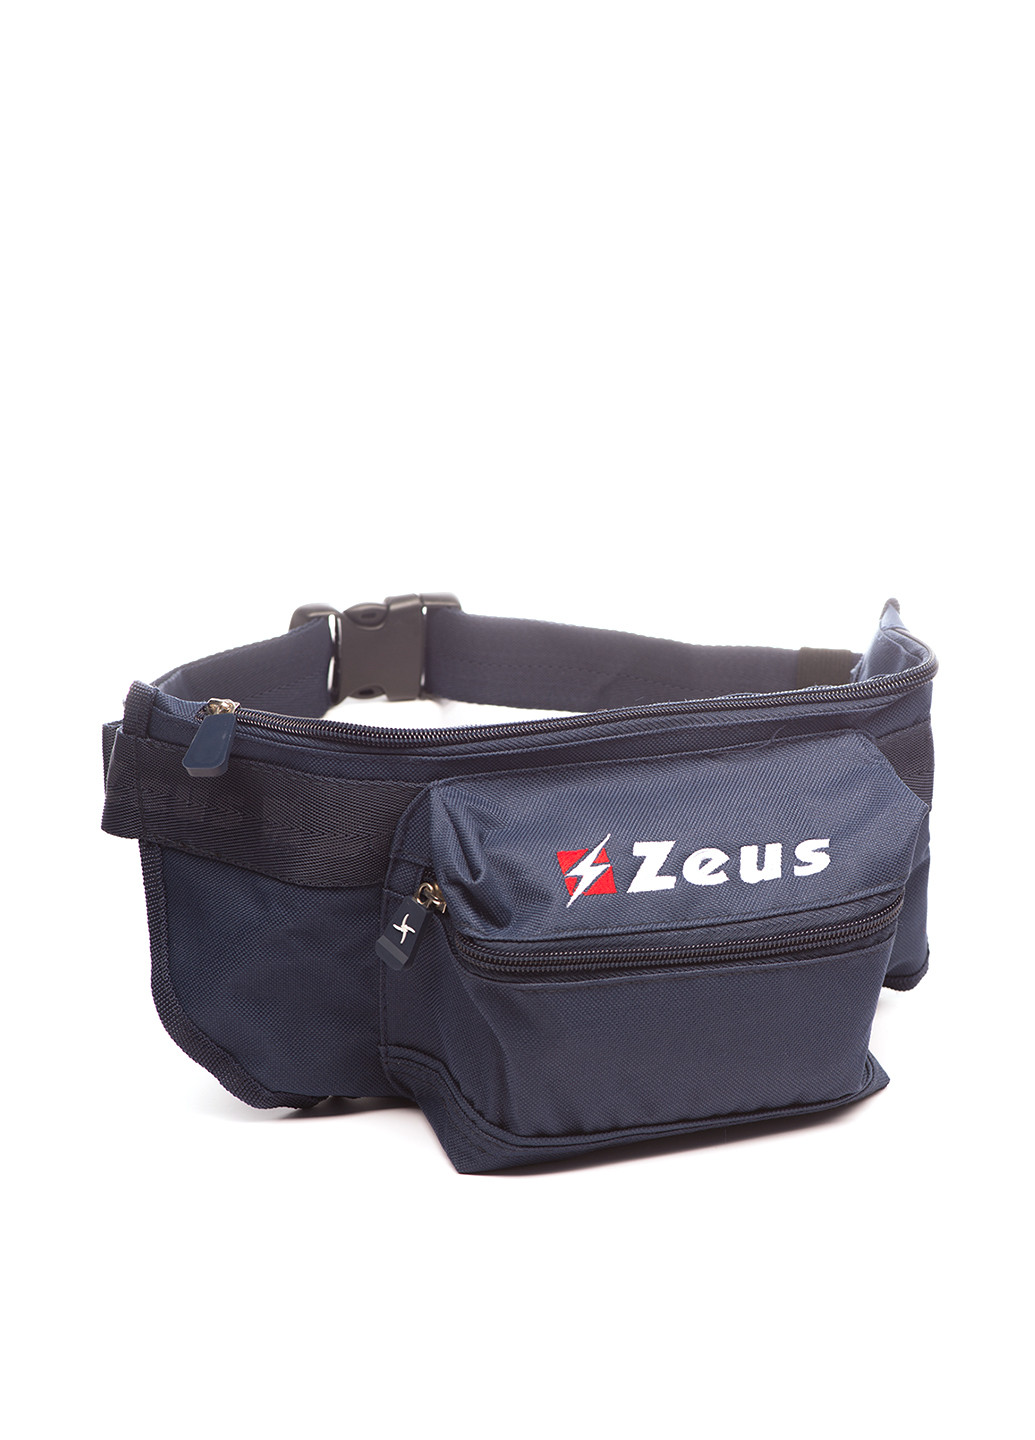 Сумка Zeus поясная сумка логотип тёмно-синяя спортивная